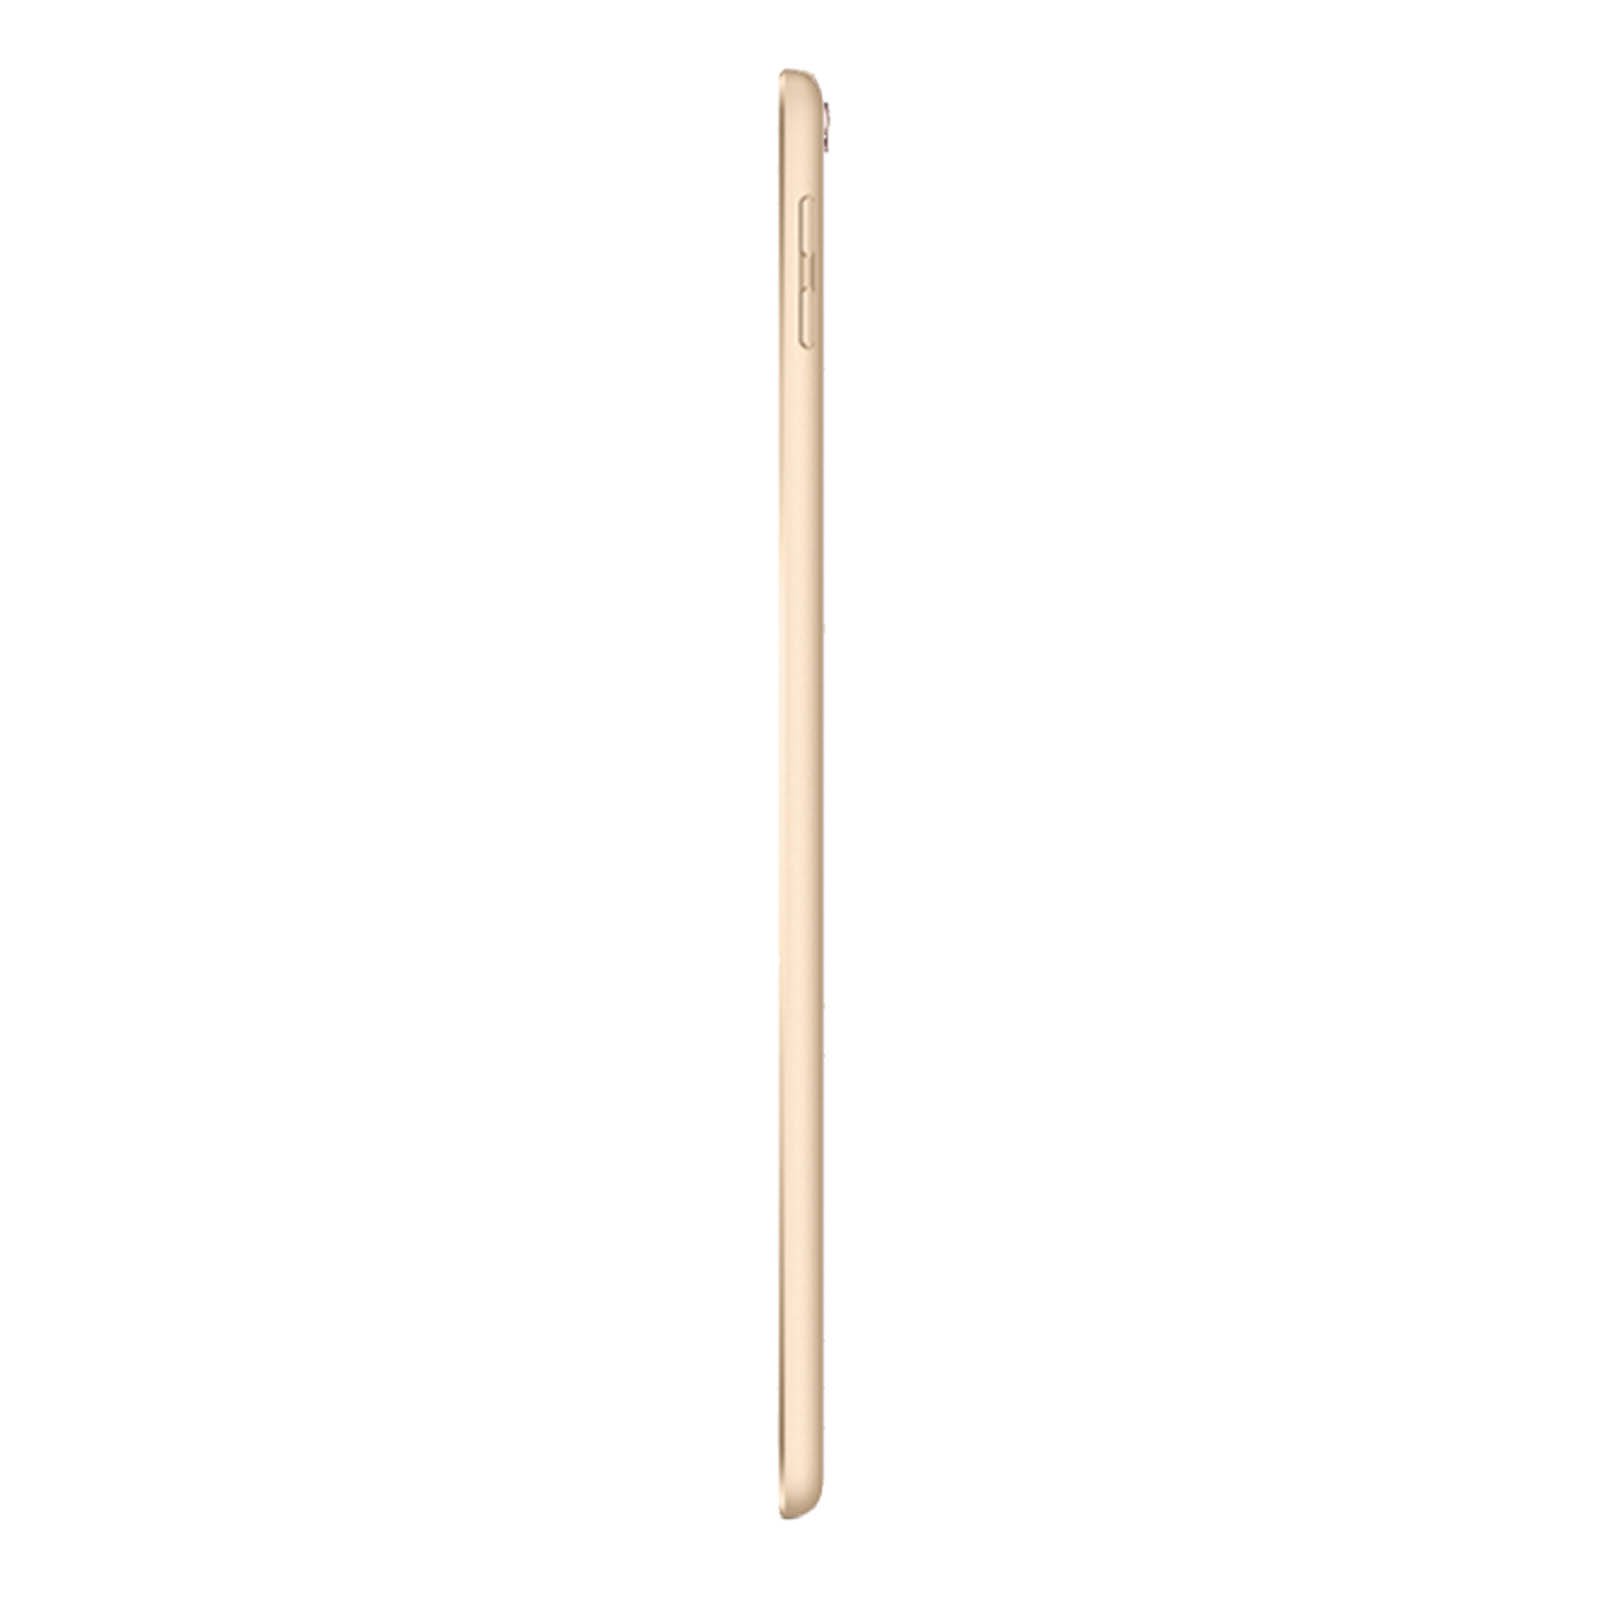 iPad Pro 10.5 Inch 64GB Gold Good - WiFi